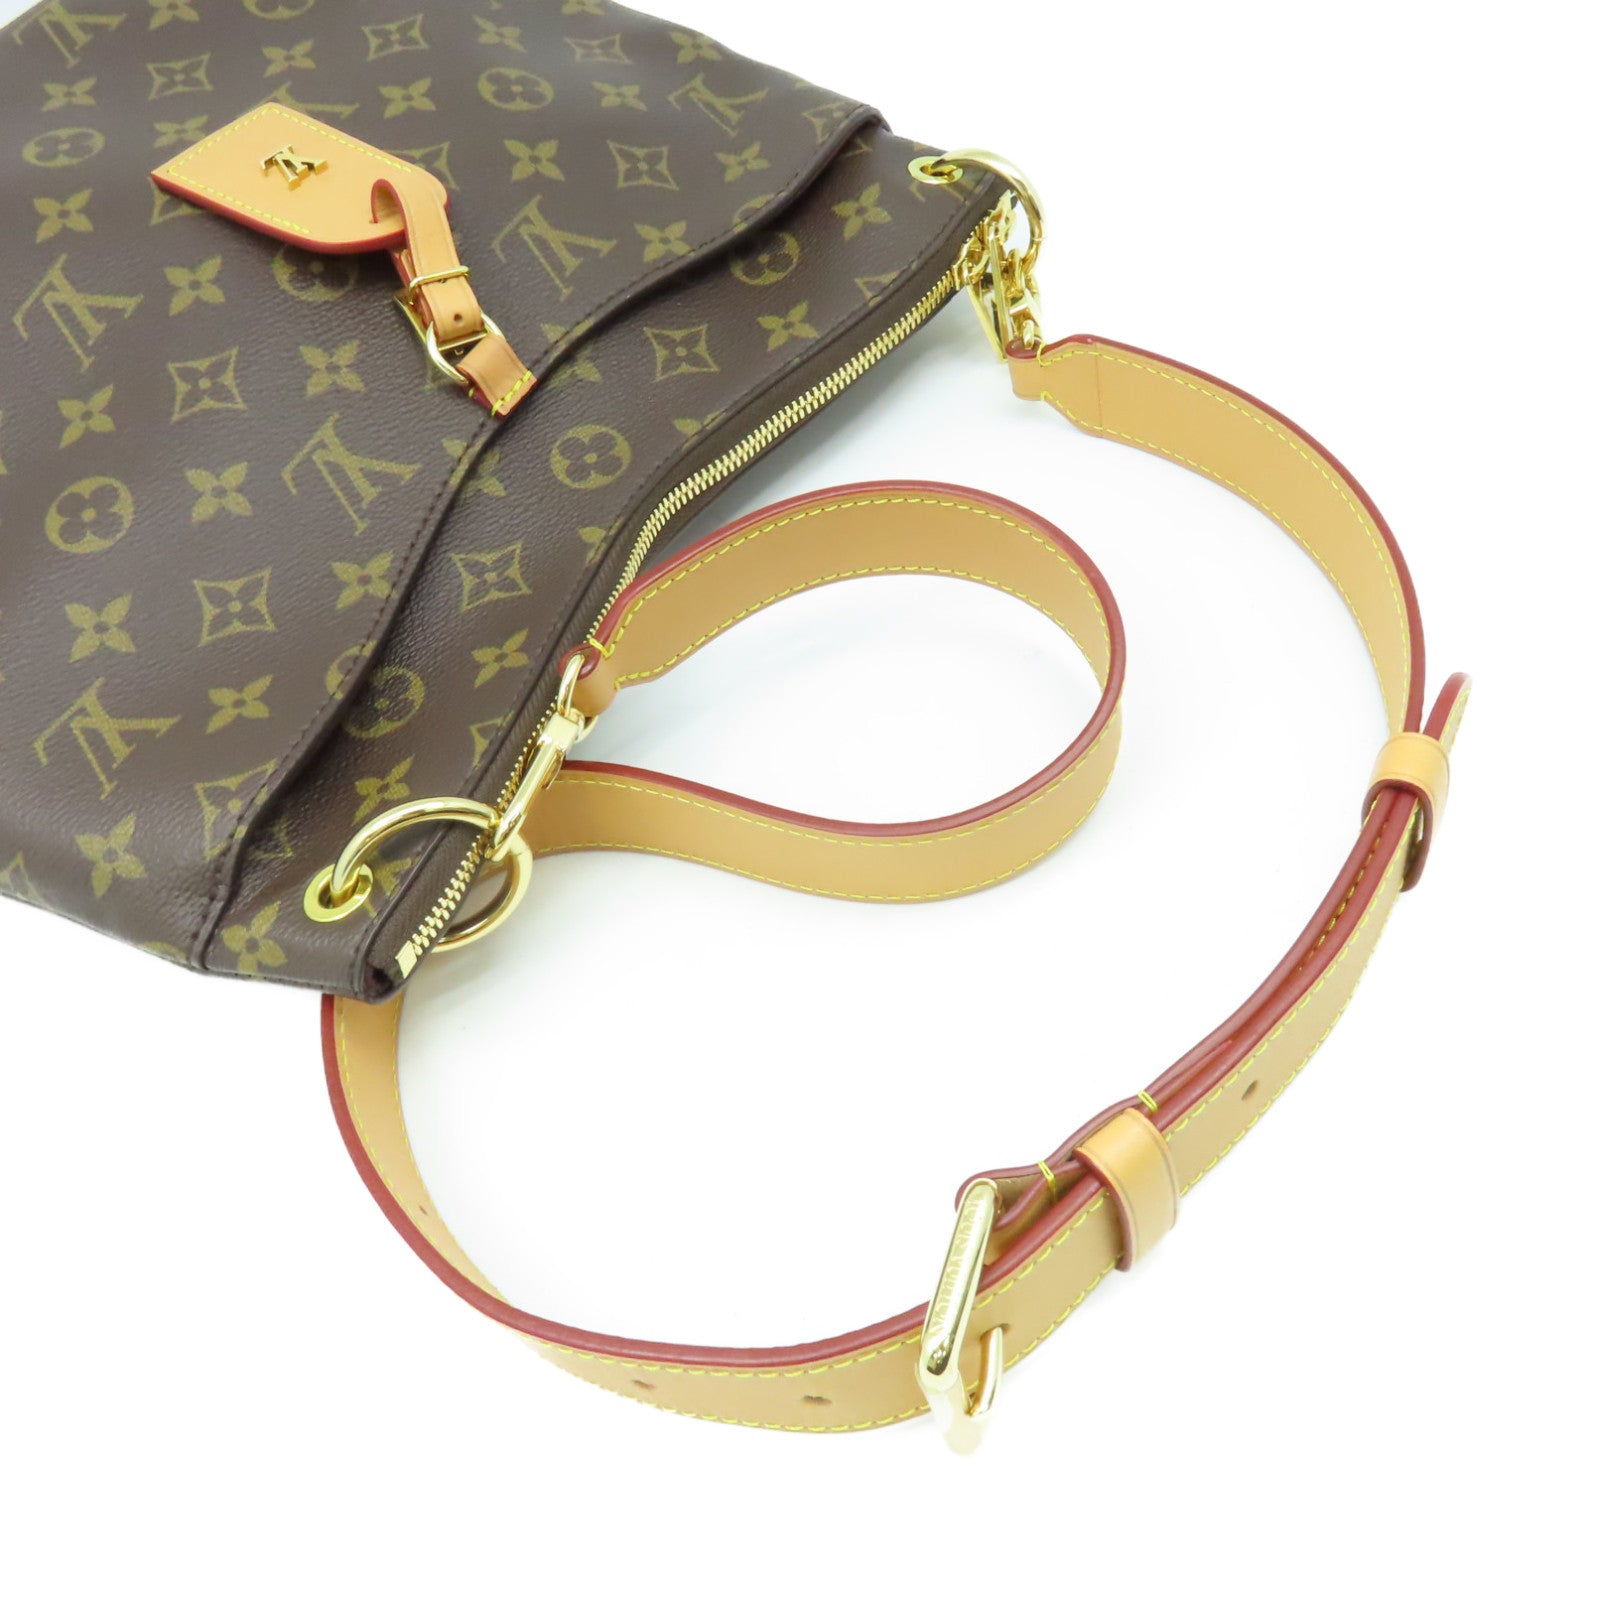 LOUIS VUITTON Monogram Batignolles Tote Bag Hand Bag Brown – Brand Off Hong  Kong Online Store